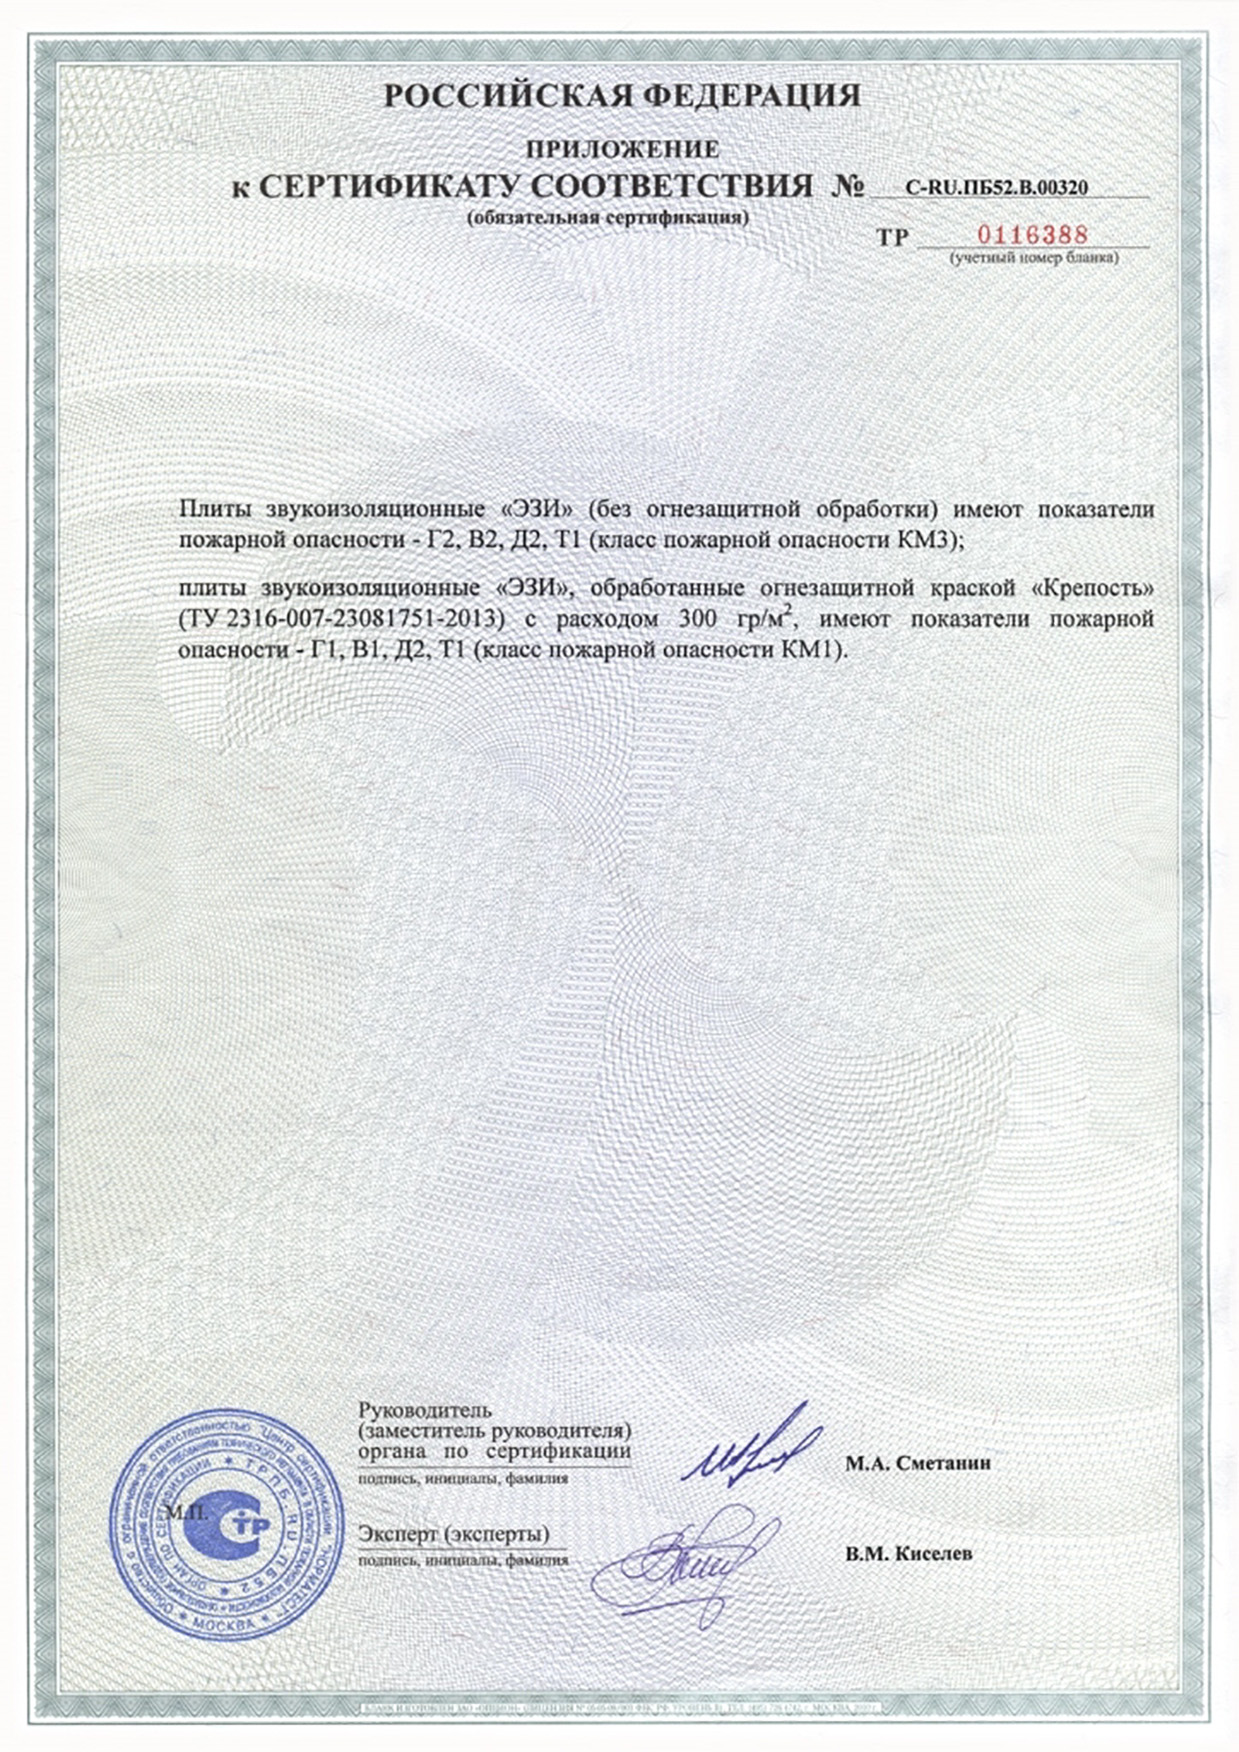 Сертификат пожарной безопасности на панели МДФ огнестойкие г1 в1 д2 т2